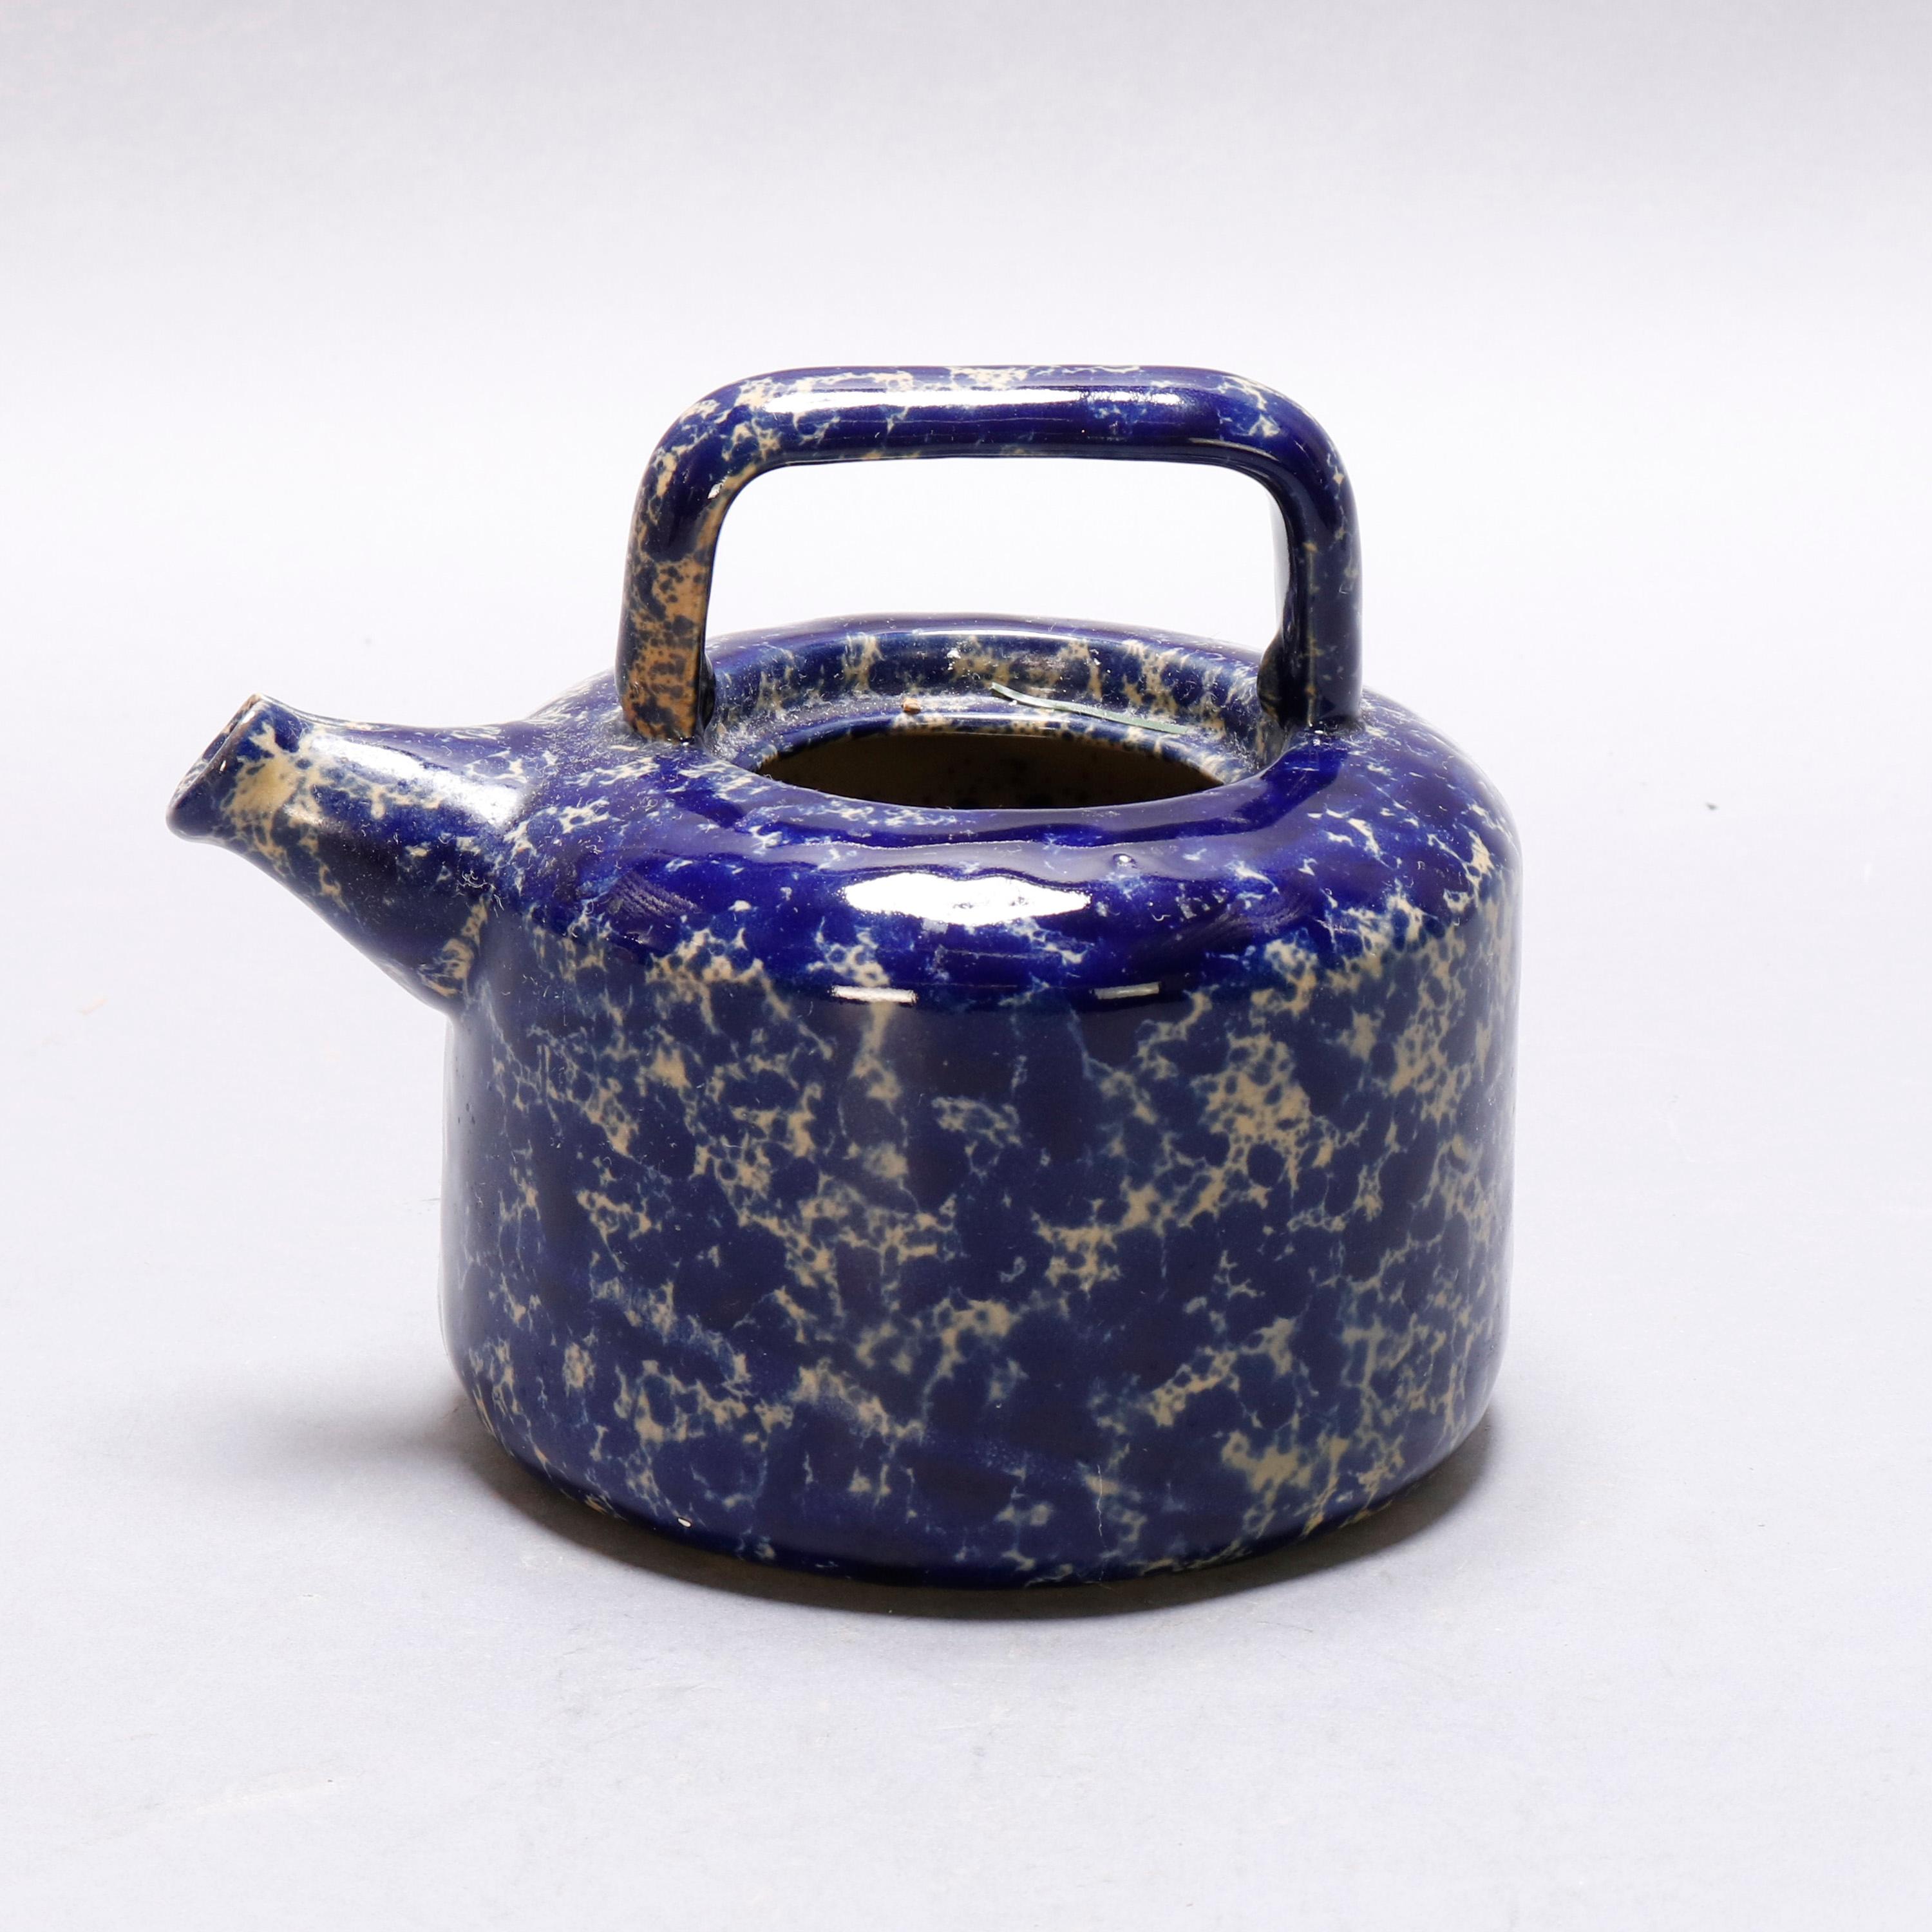 Antique Cobalt Blue Sponge Wear Pottery Teapot with Strainer, 19th Century 1